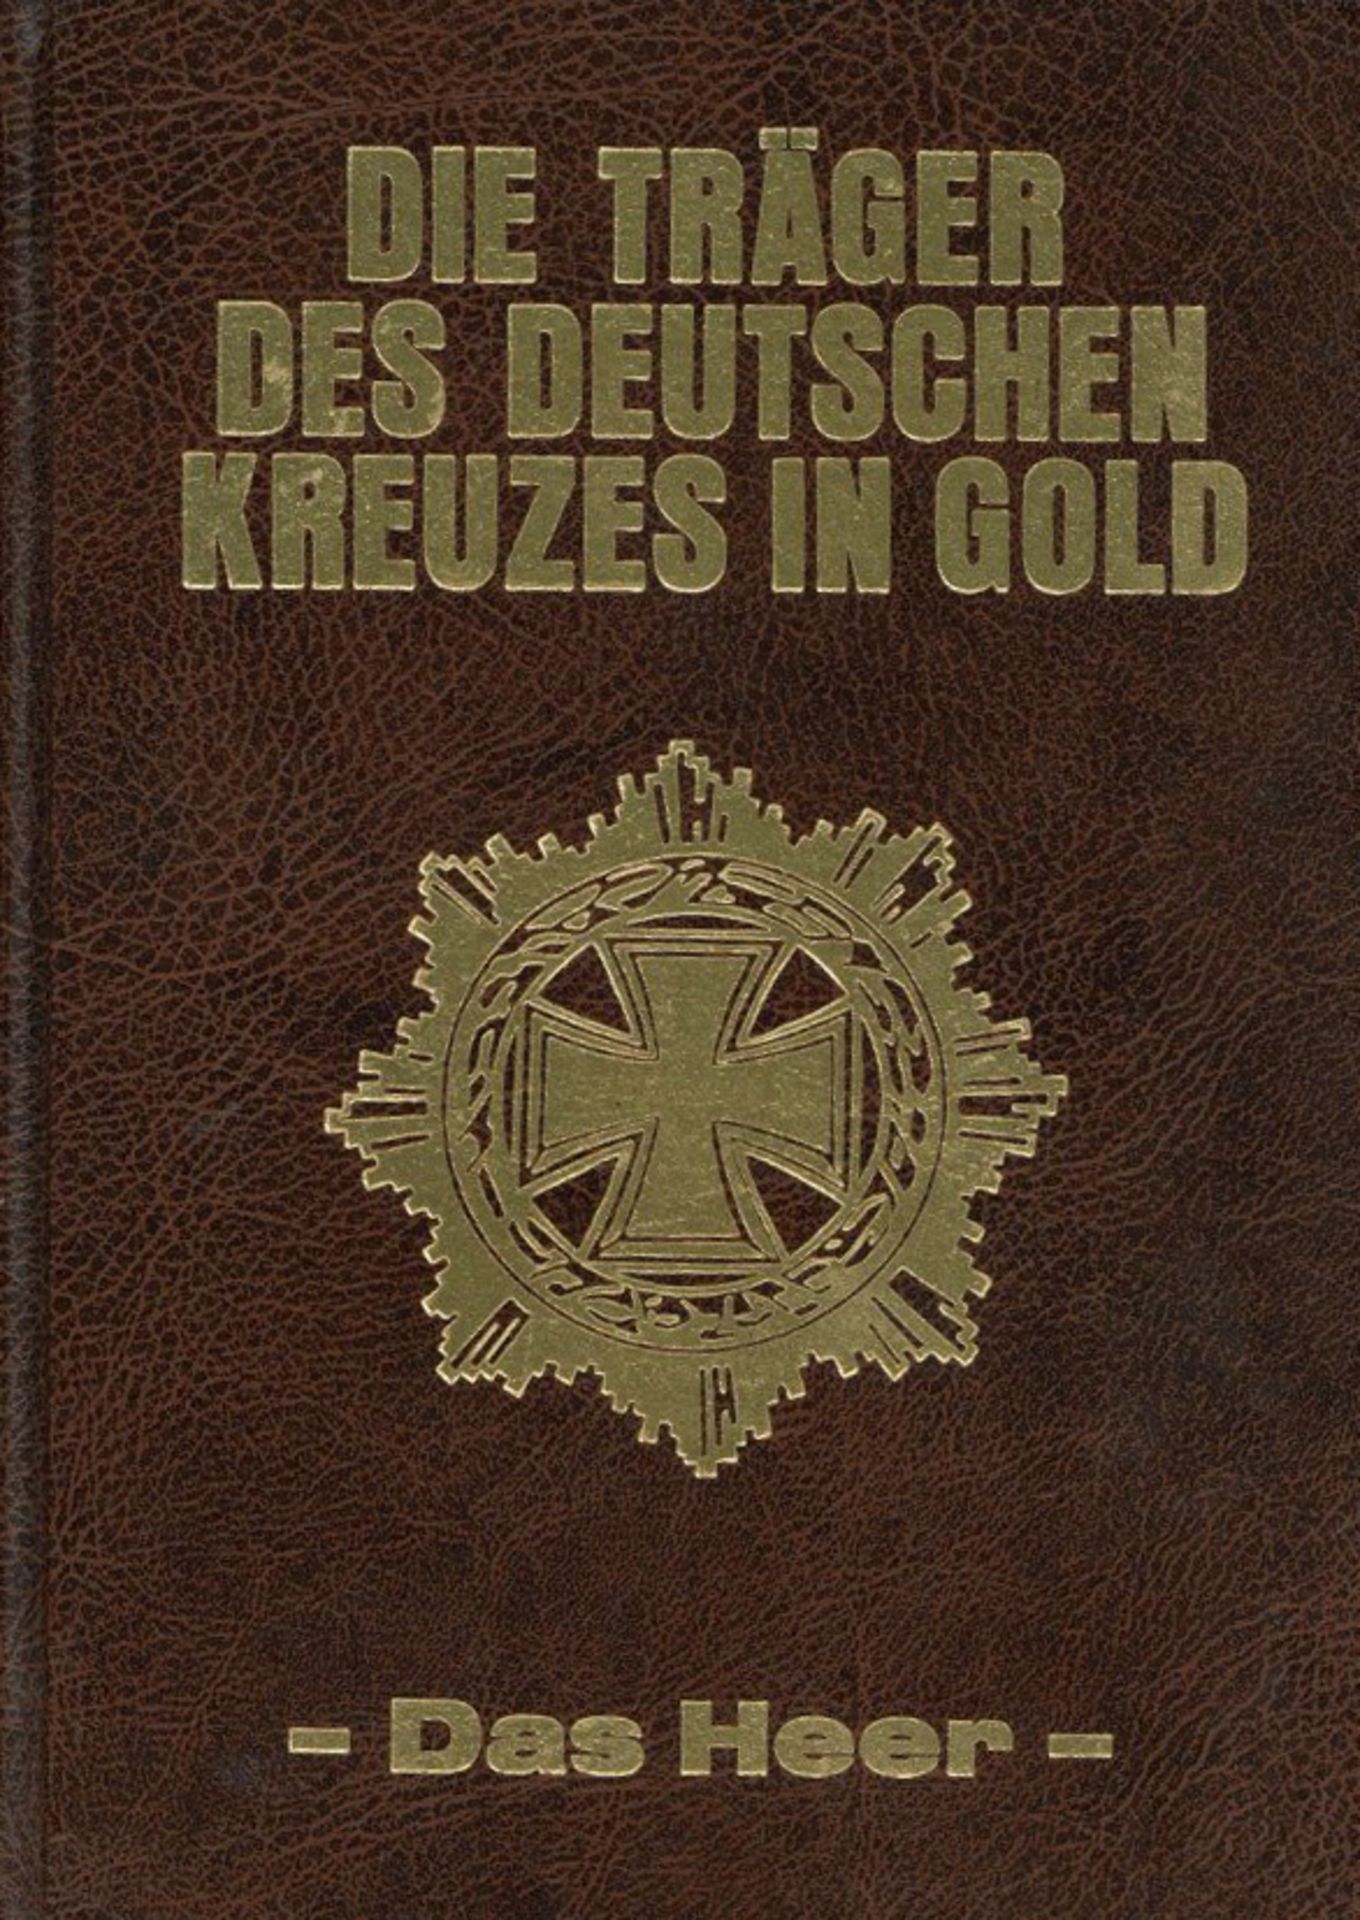 Buch WK II Die Träger Des Deutschen Kreuzes In Gold Das Heer von Scheibert, Horst 1992, Verlag